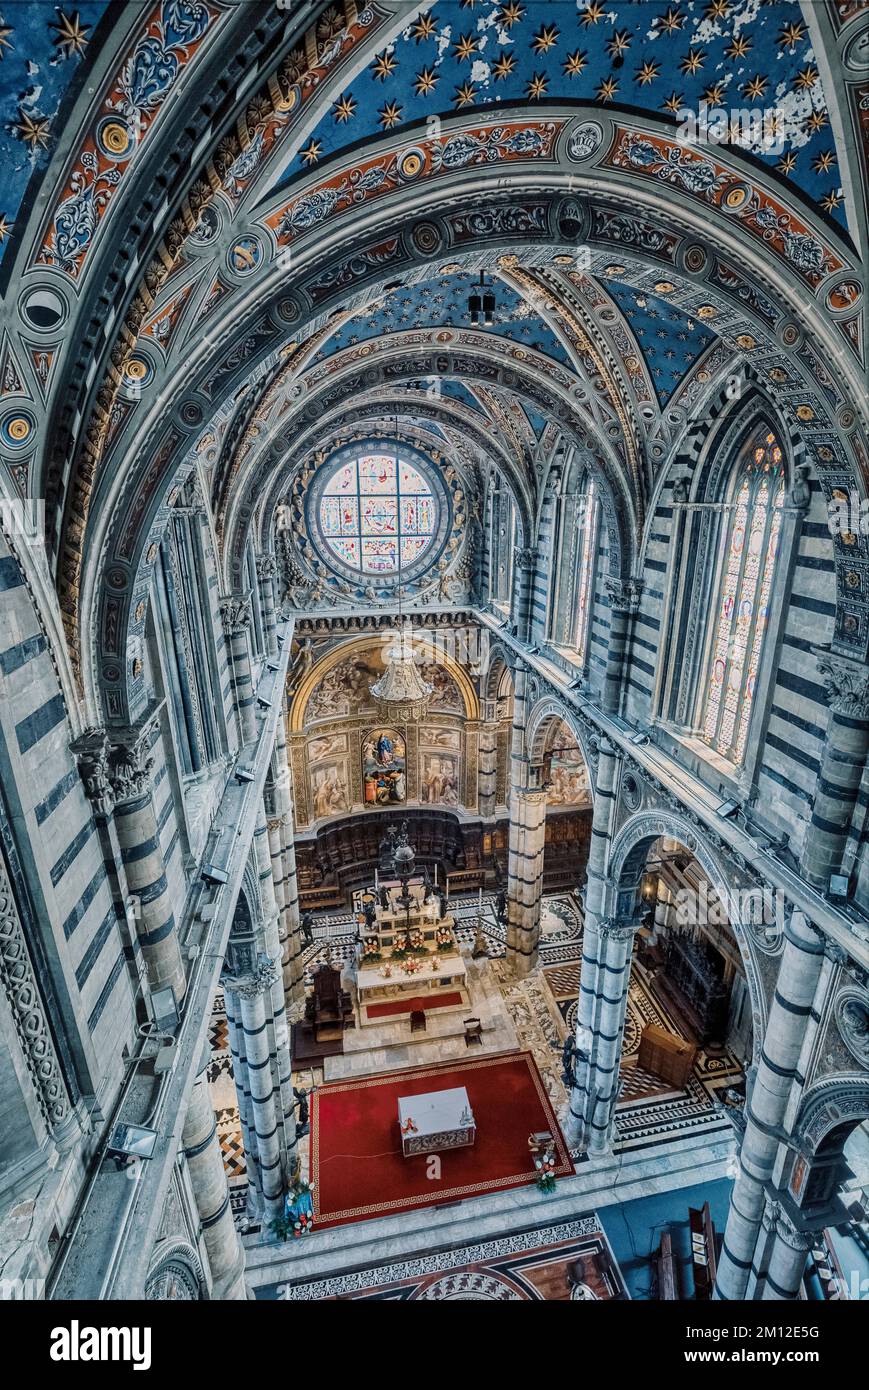 Italy, Tuscany, Siena, cathedral of Santa Maria Assunta, interior view Stock Photo